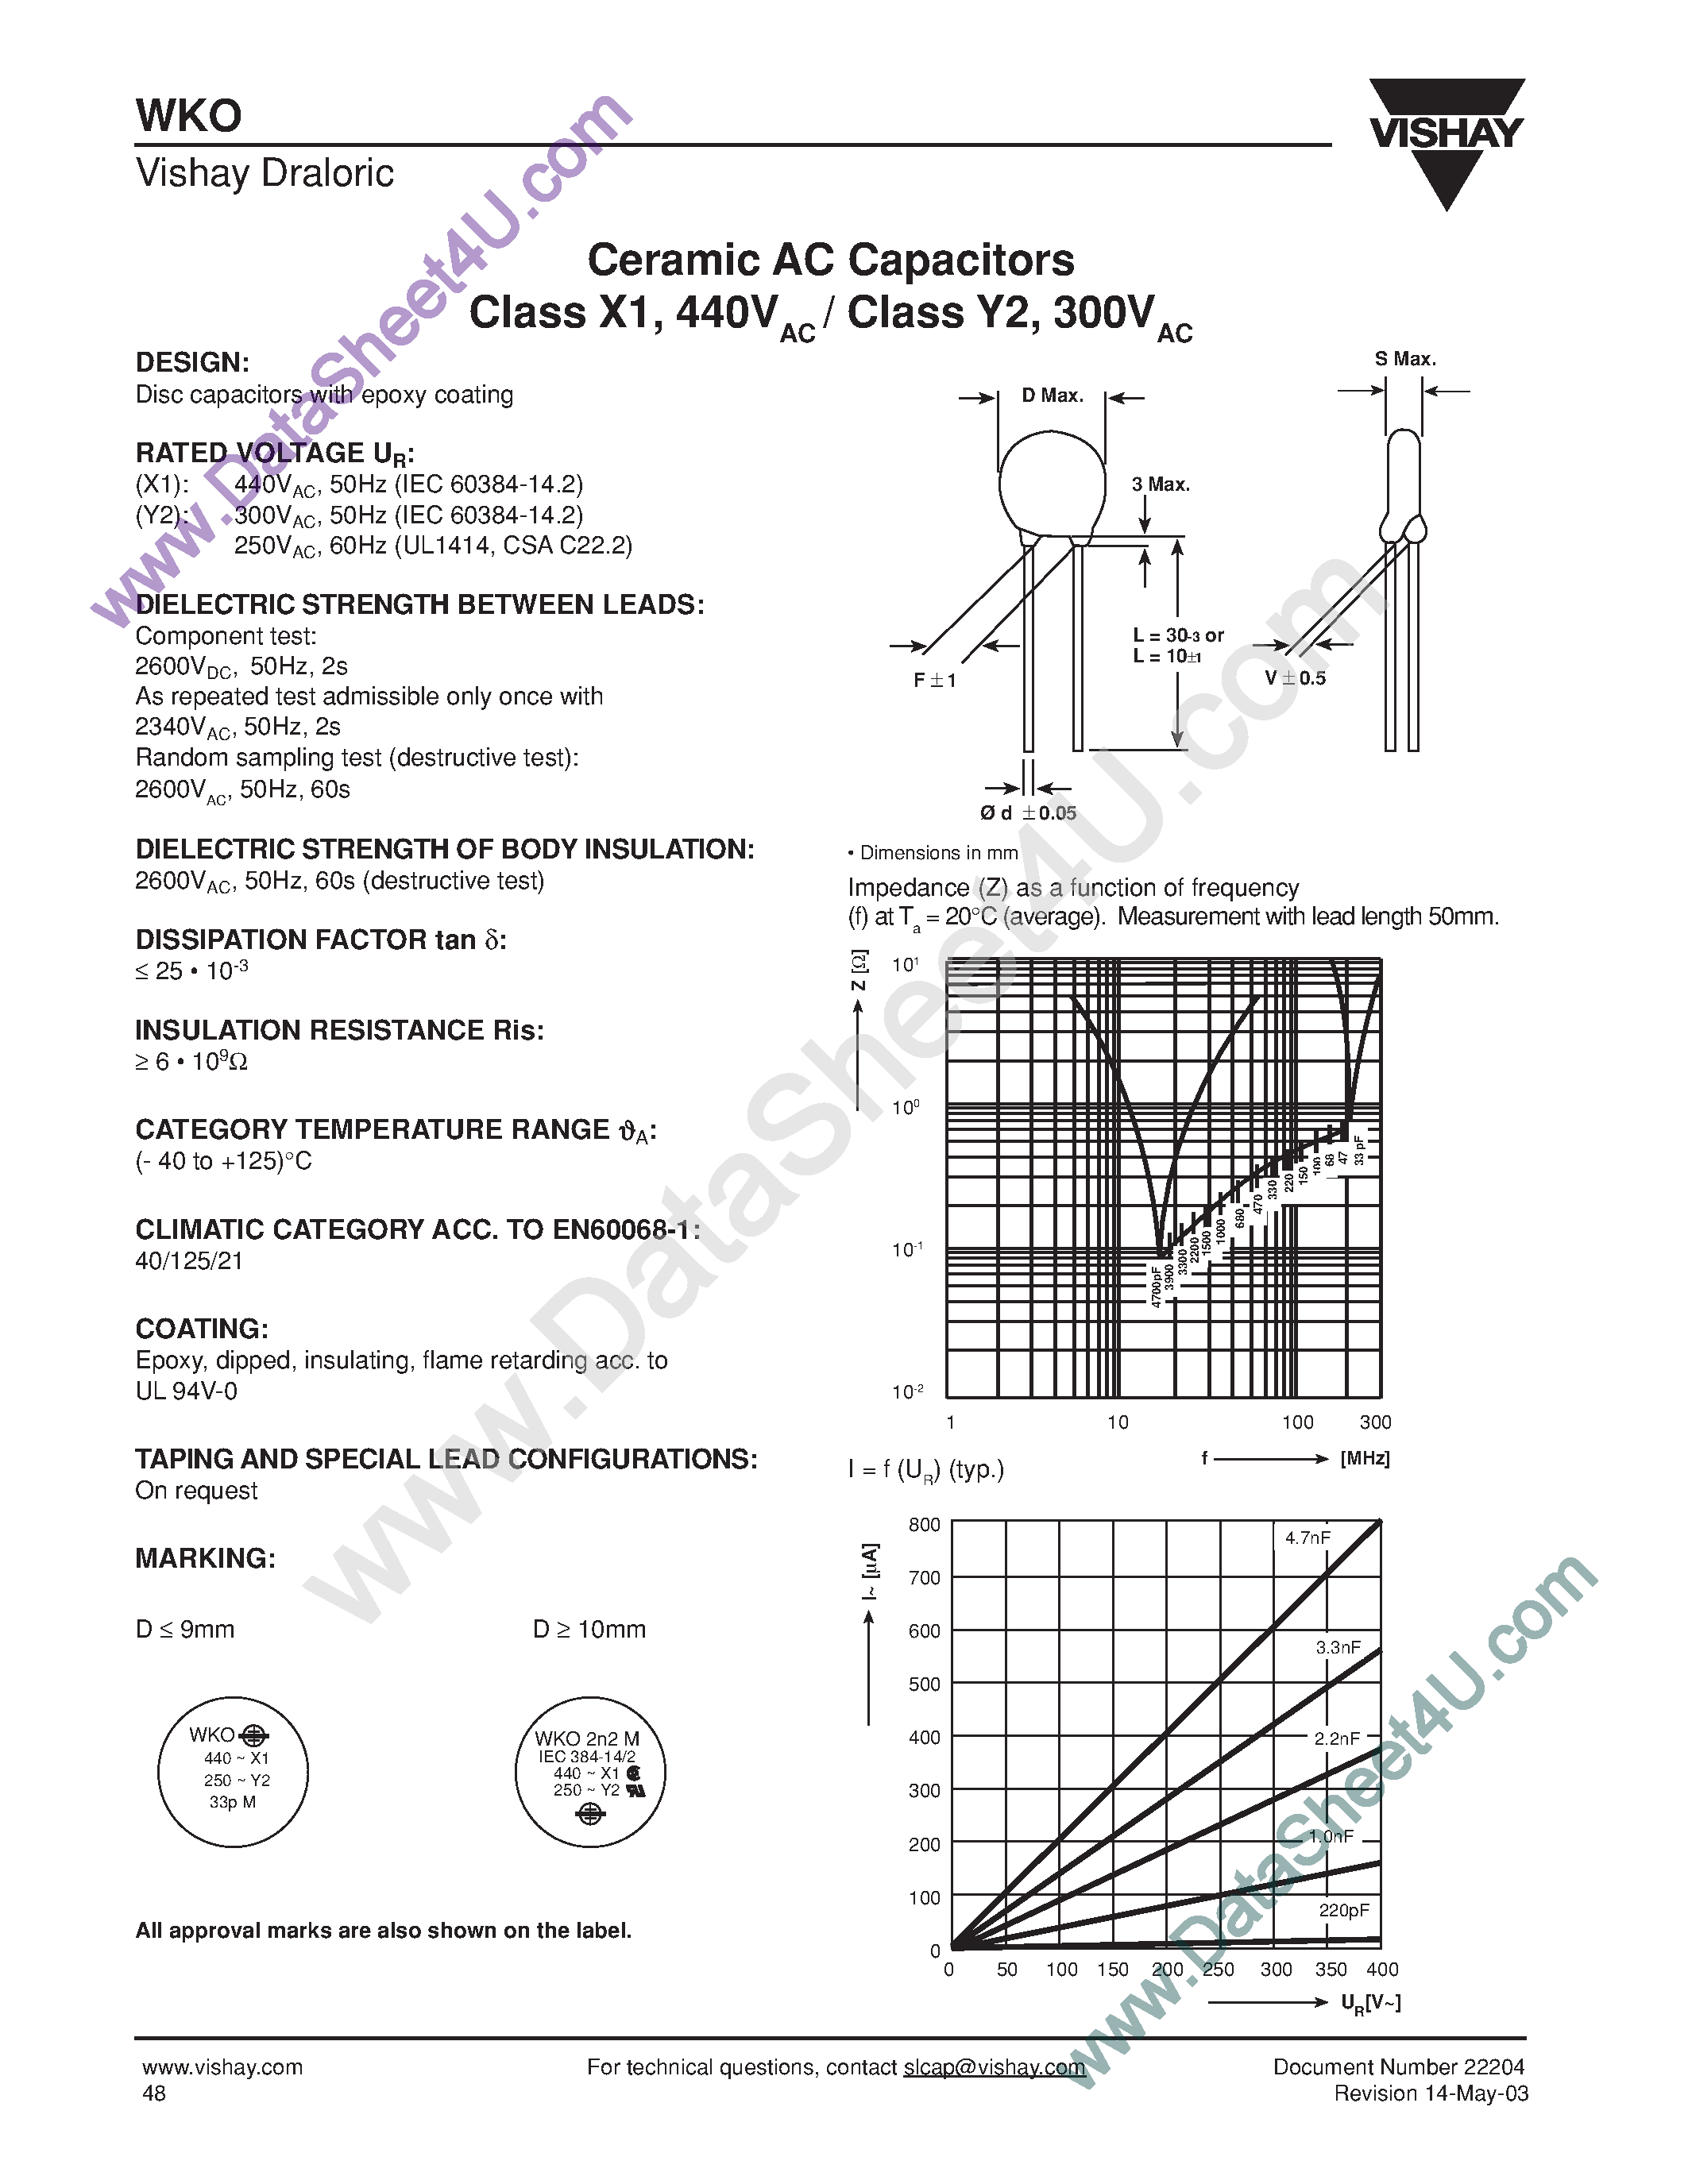 Даташит WKO101xCPxxx - WKO Series / Ceramic AC Capacitors страница 1